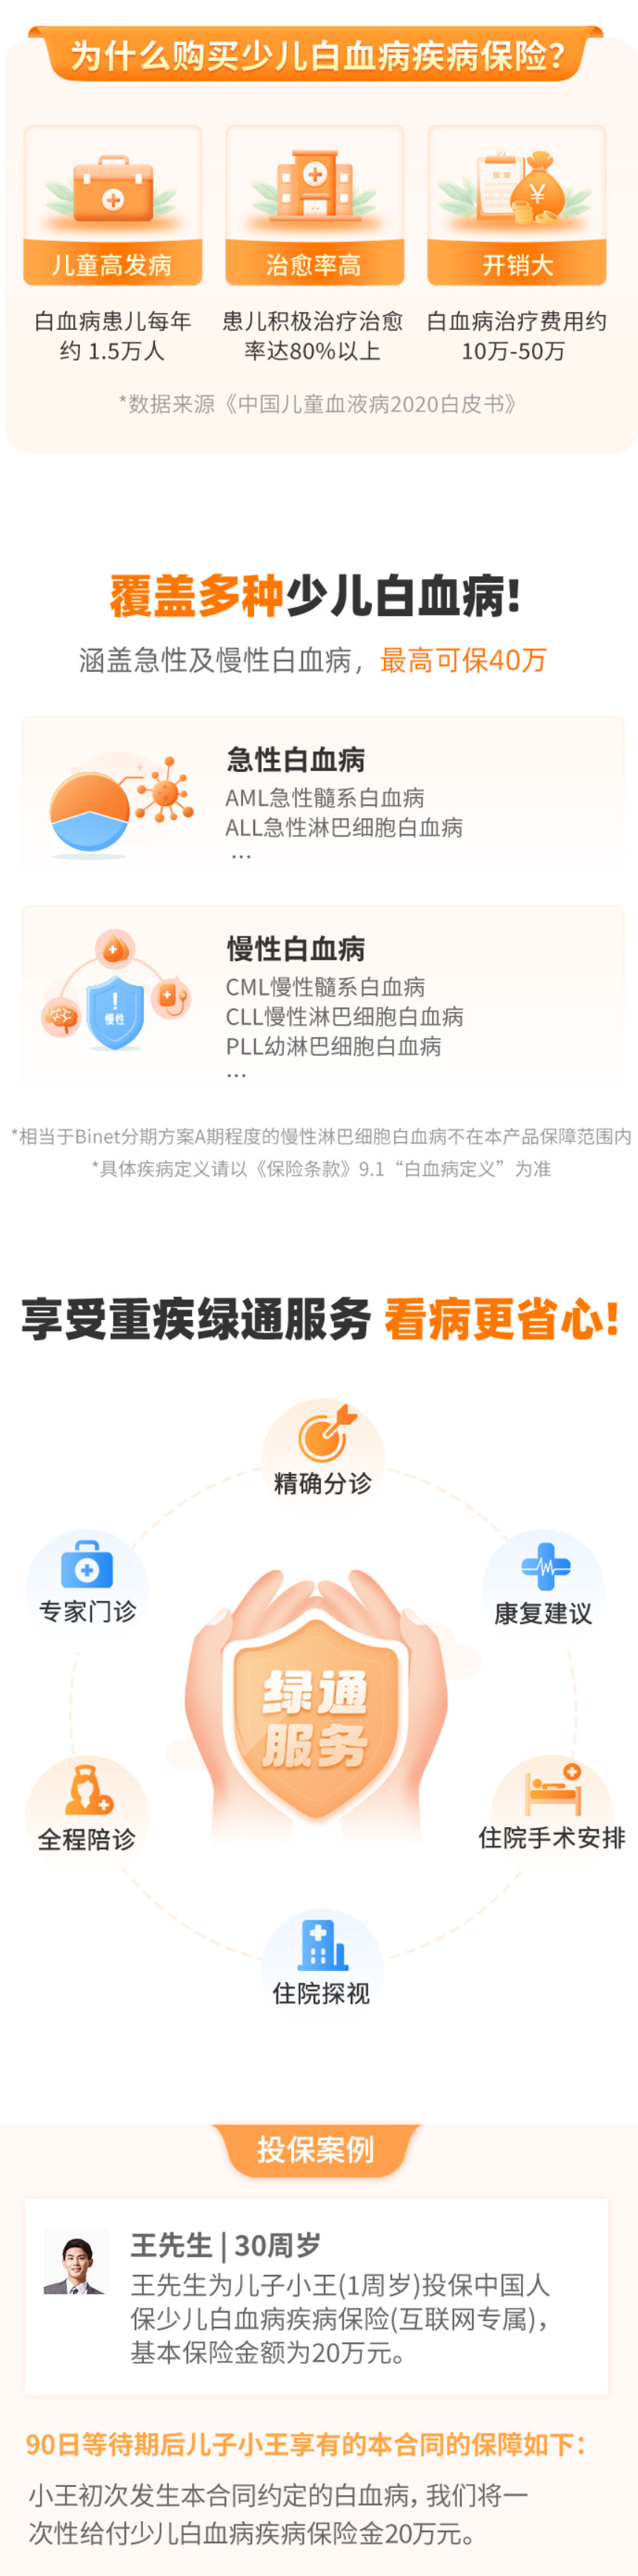 中国人保少儿白血病疾病保险(互联网专属)